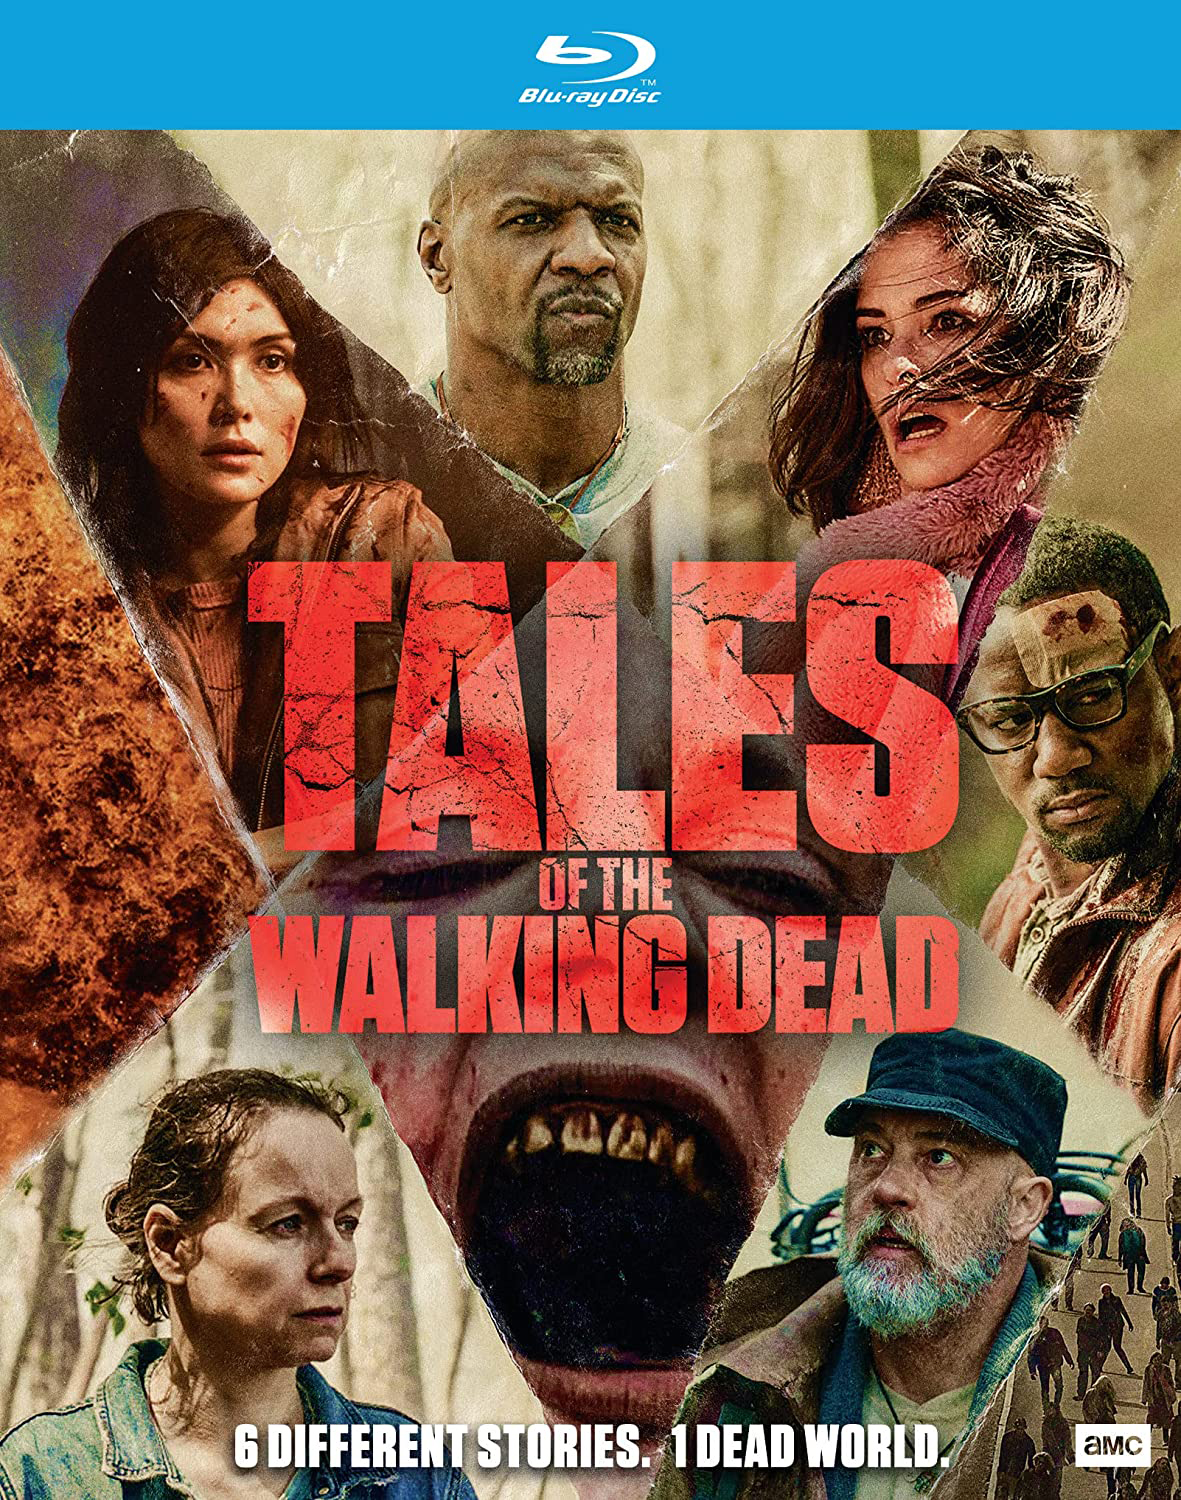 The Walking Dead: Dead City Sets Blu-ray Release Date